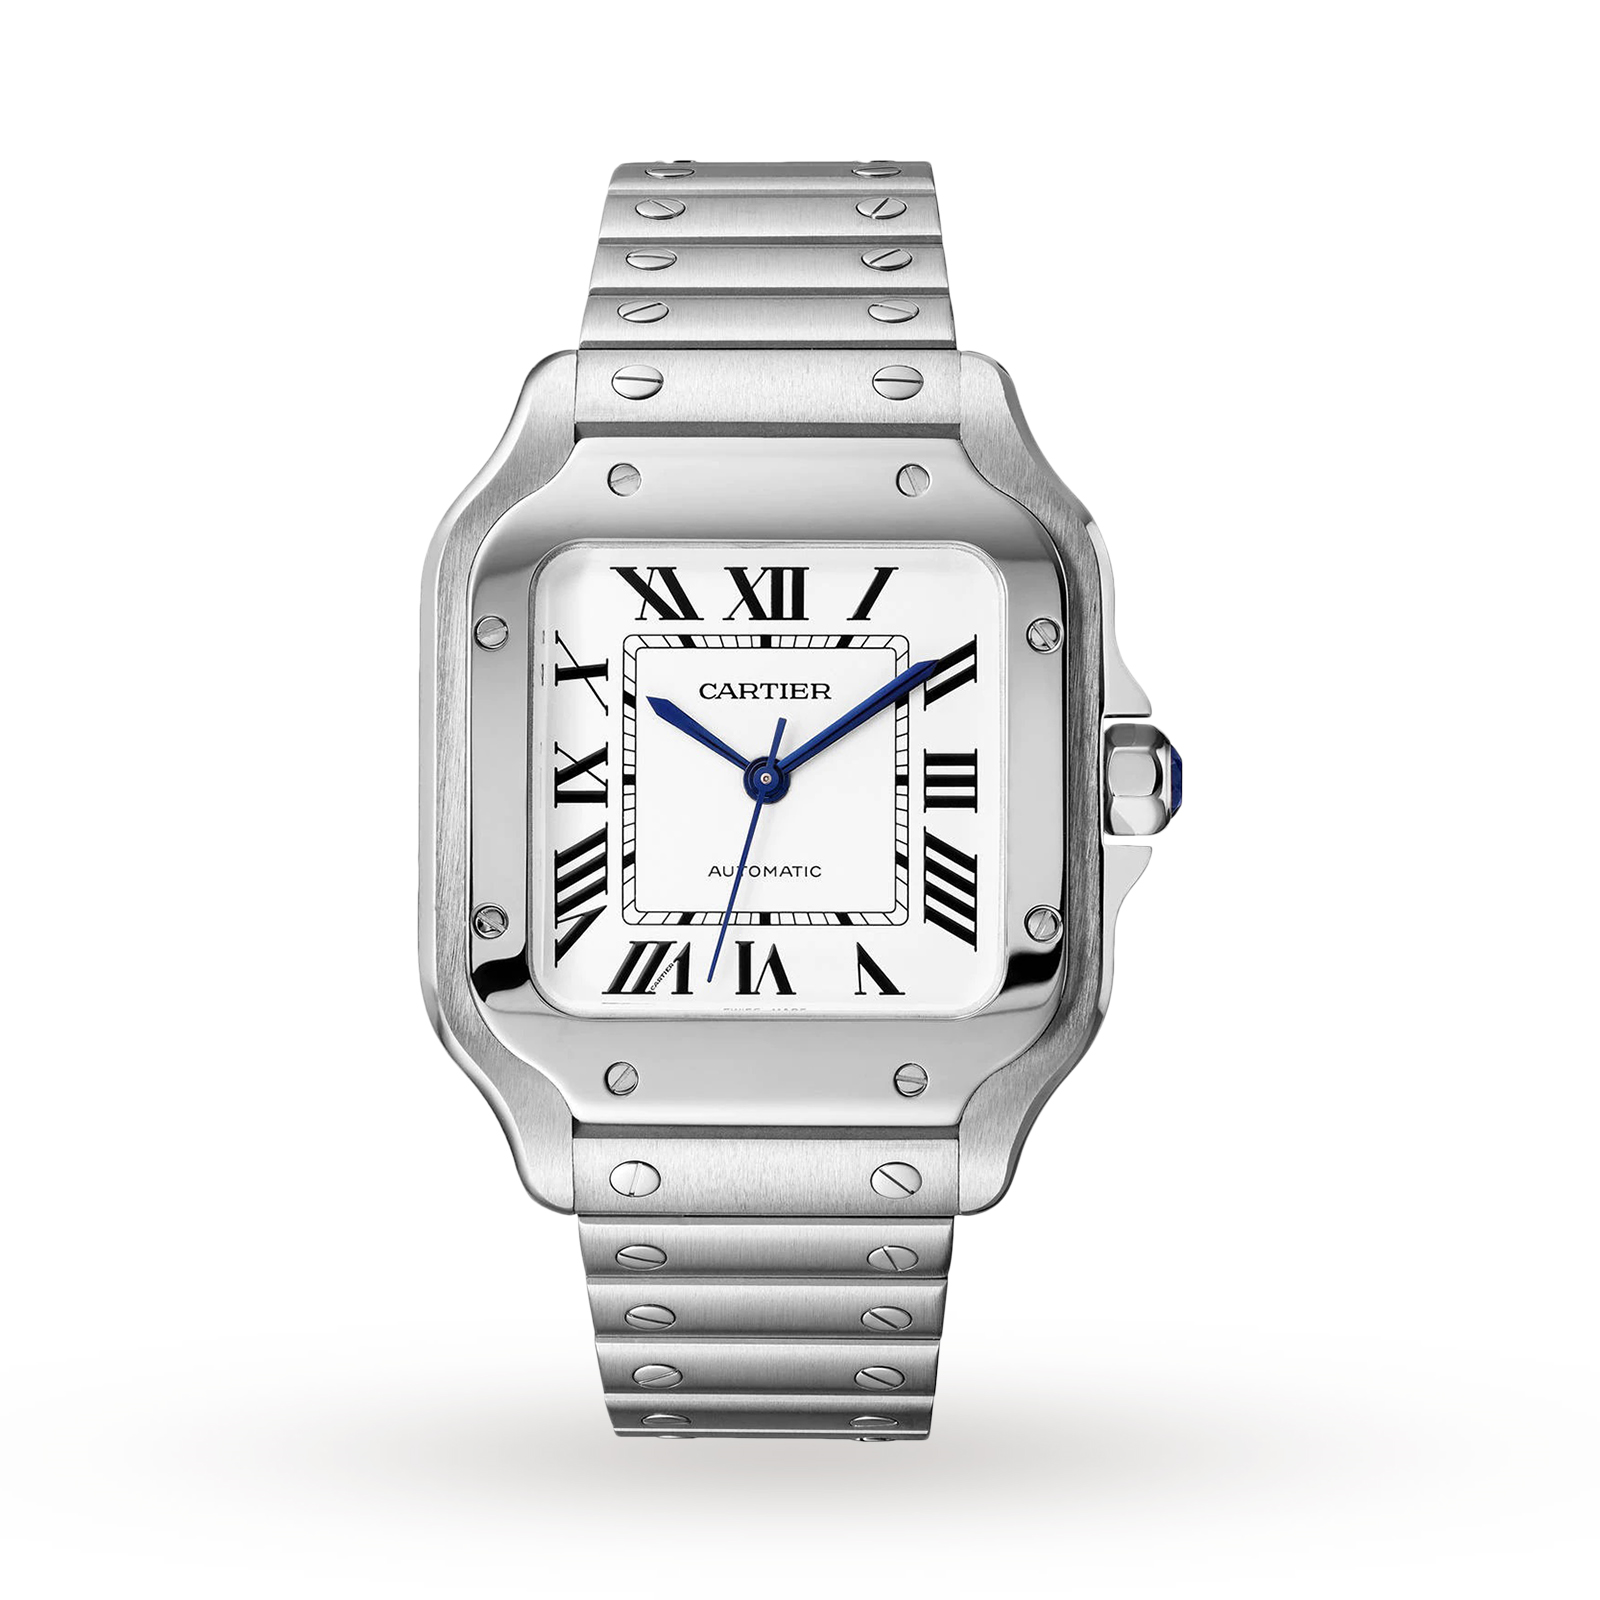 Santos de Cartier watch, Medium model 